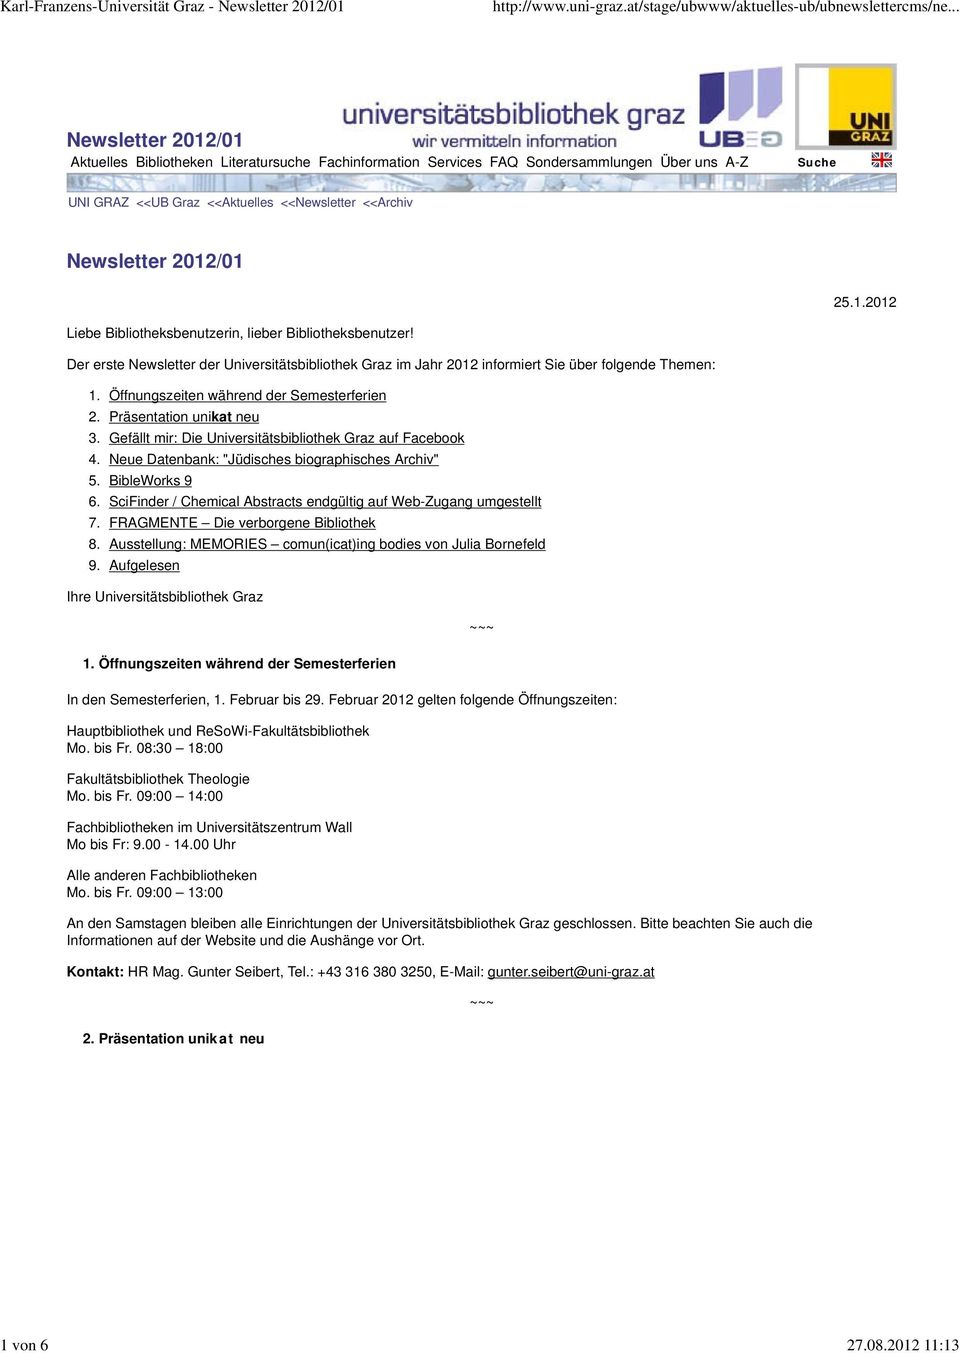 2012/01 Liebe Bibliotheksbenutzerin, lieber Bibliotheksbenutzer! Der erste Newsletter der Universitätsbibliothek Graz im Jahr 2012 informiert Sie über folgende Themen: 25.1.2012 1. 2. 3. 4. 5. 6. 7.